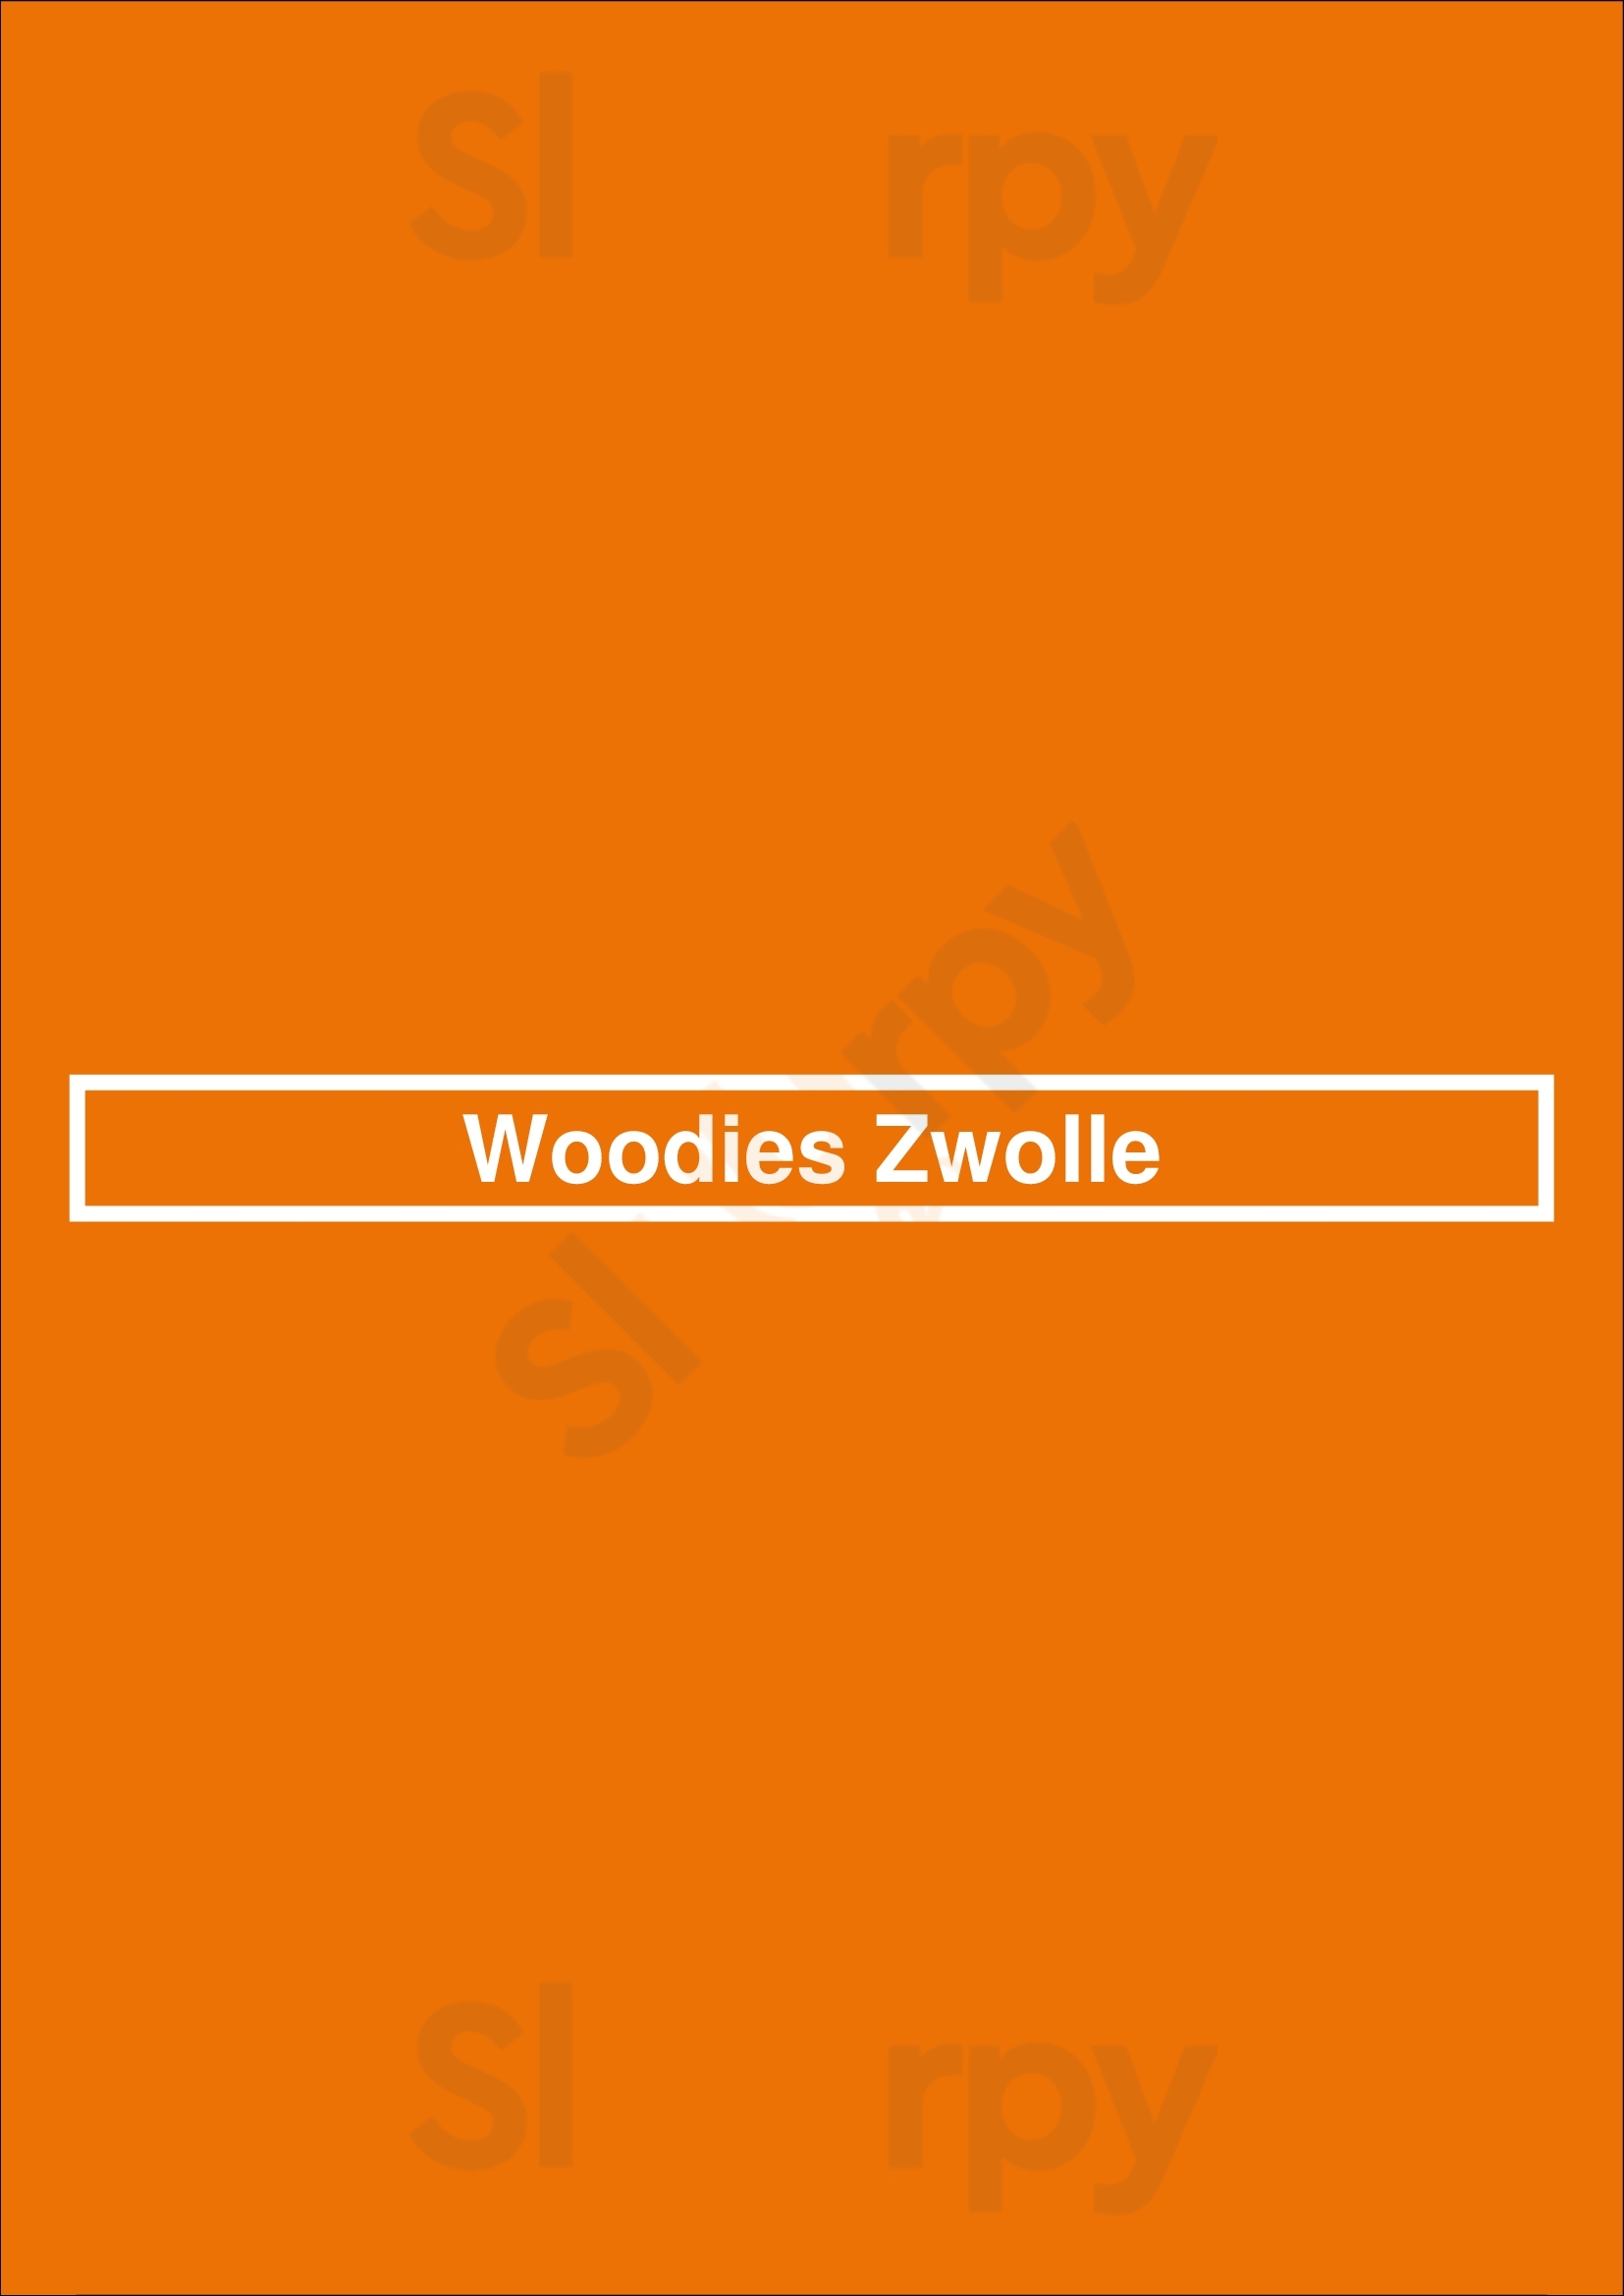 Woodies Zwolle Zwolle Menu - 1